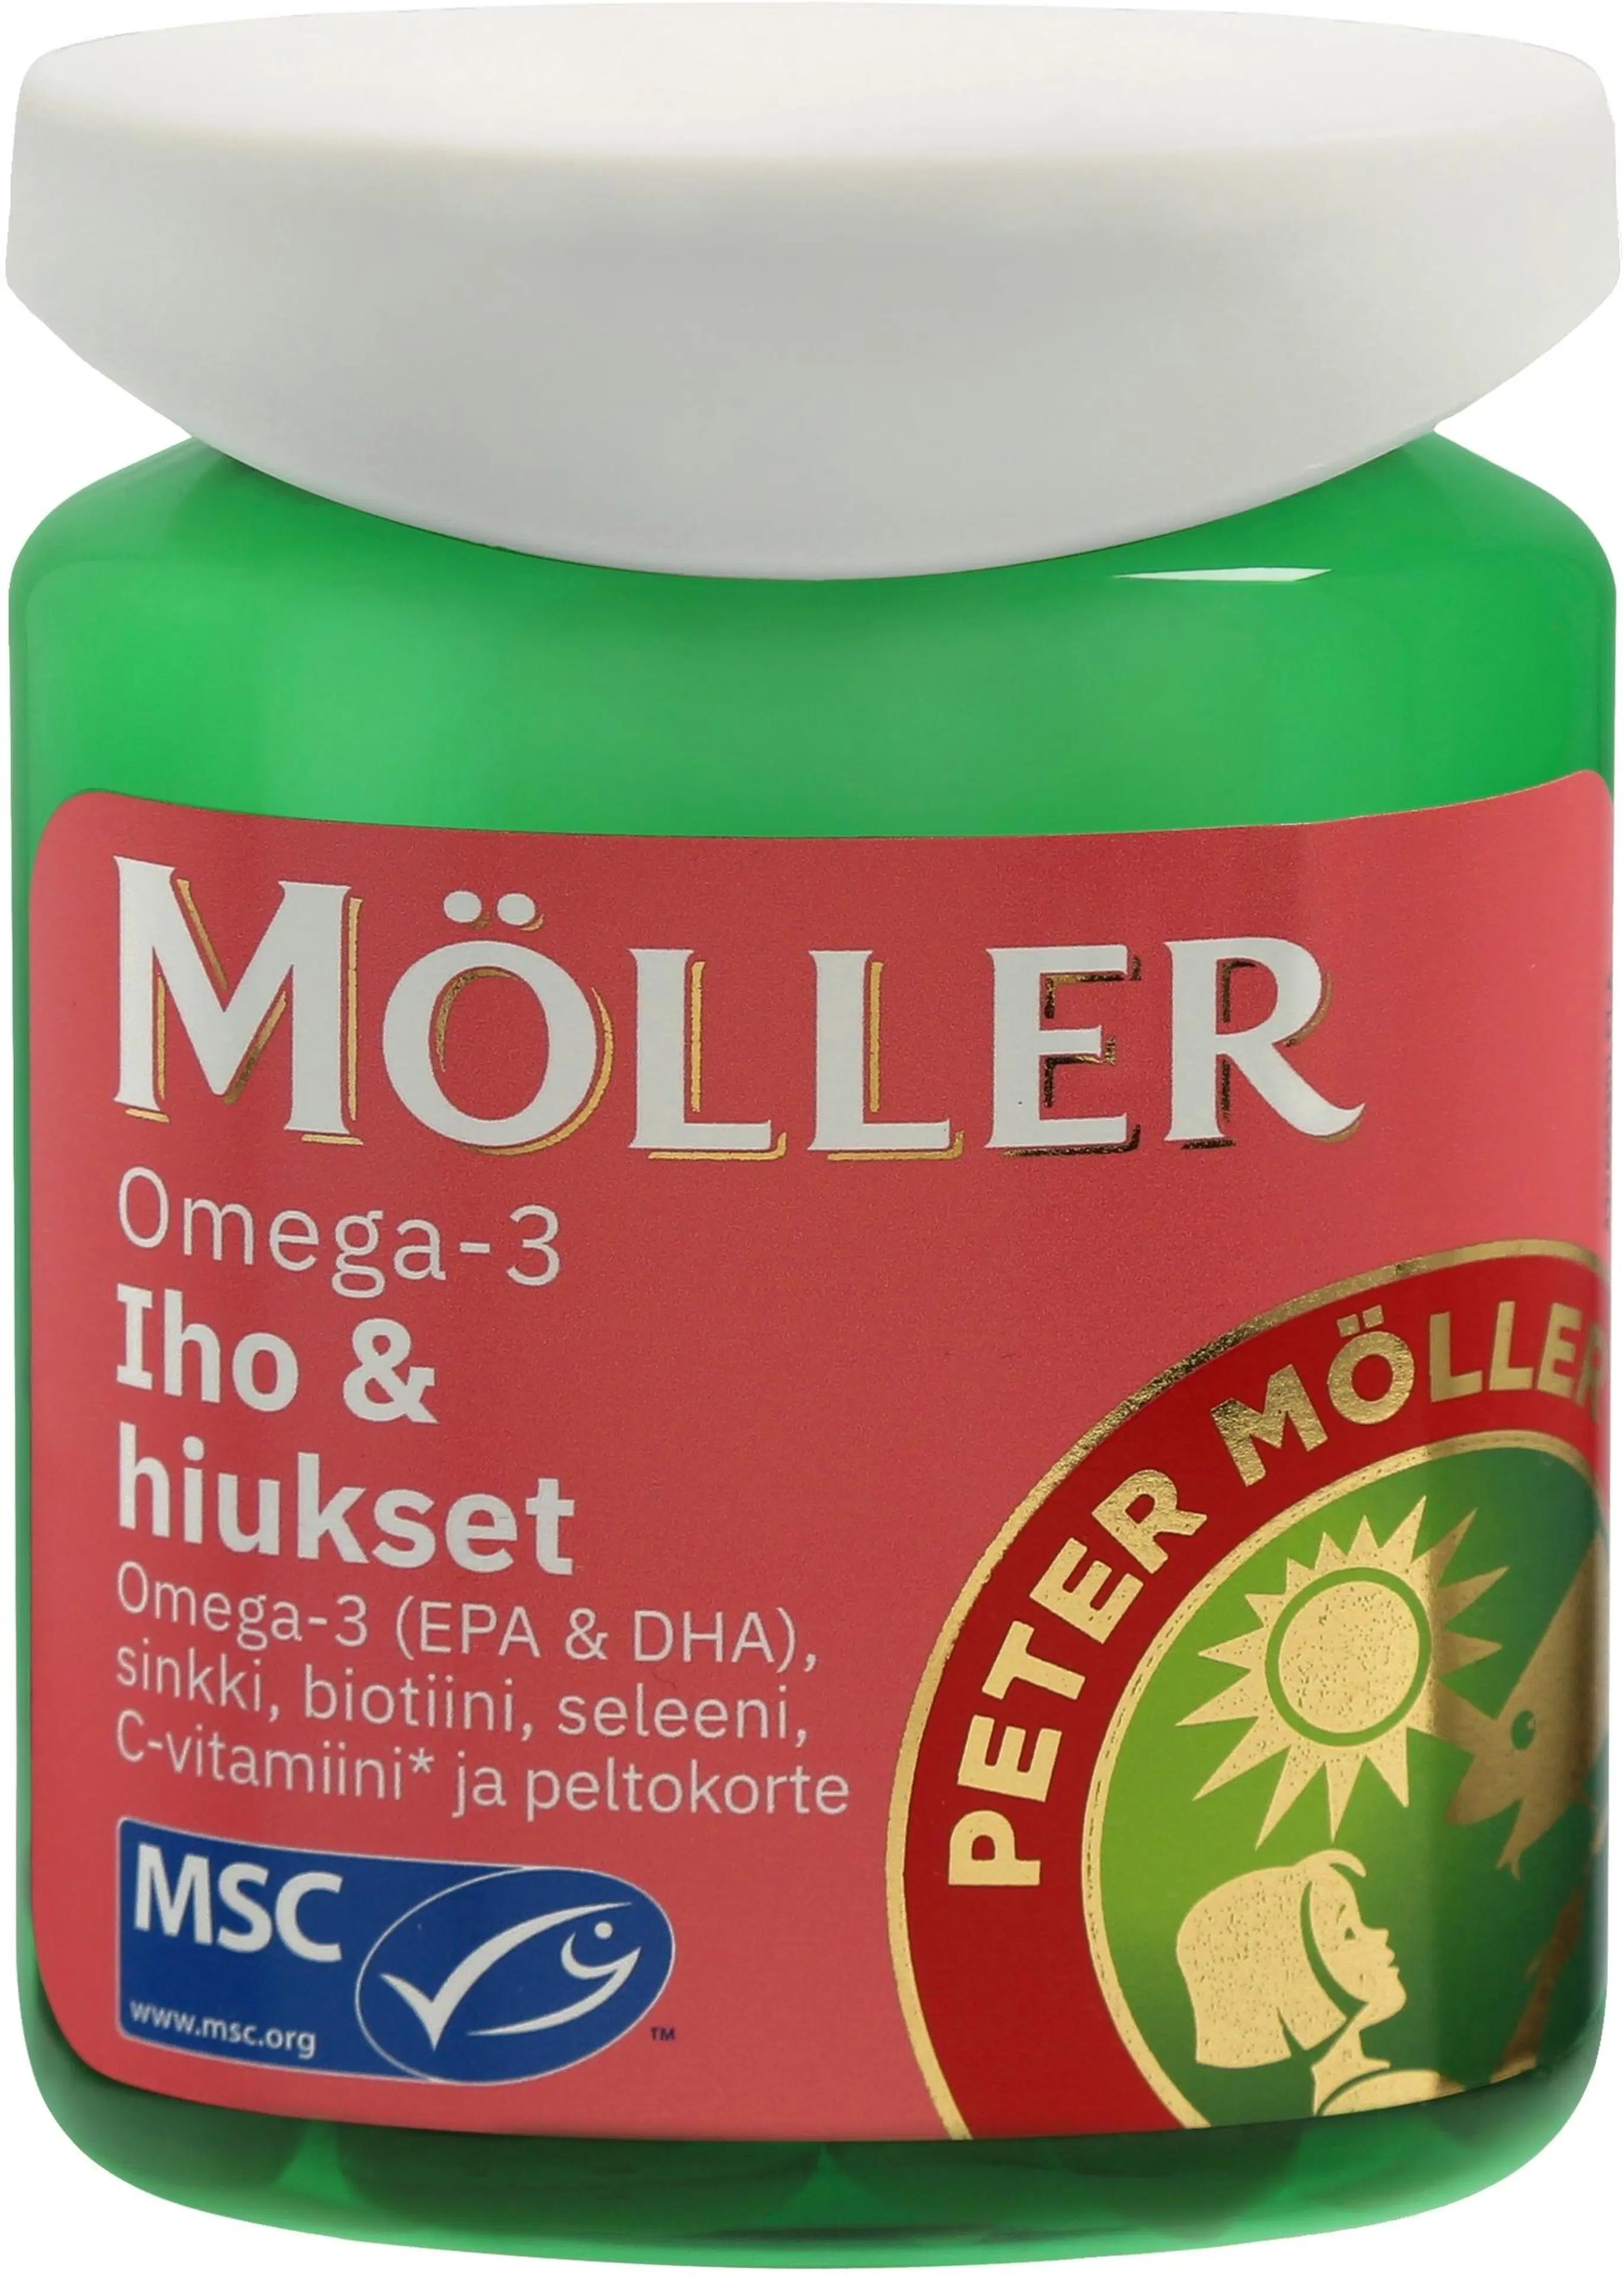 Möller Omega-3 Iho & hiukset Omega-3-rasvahappo-peltokorte-vitamiini-kivennäisainekapseli ravintolisä 76g/60kaps